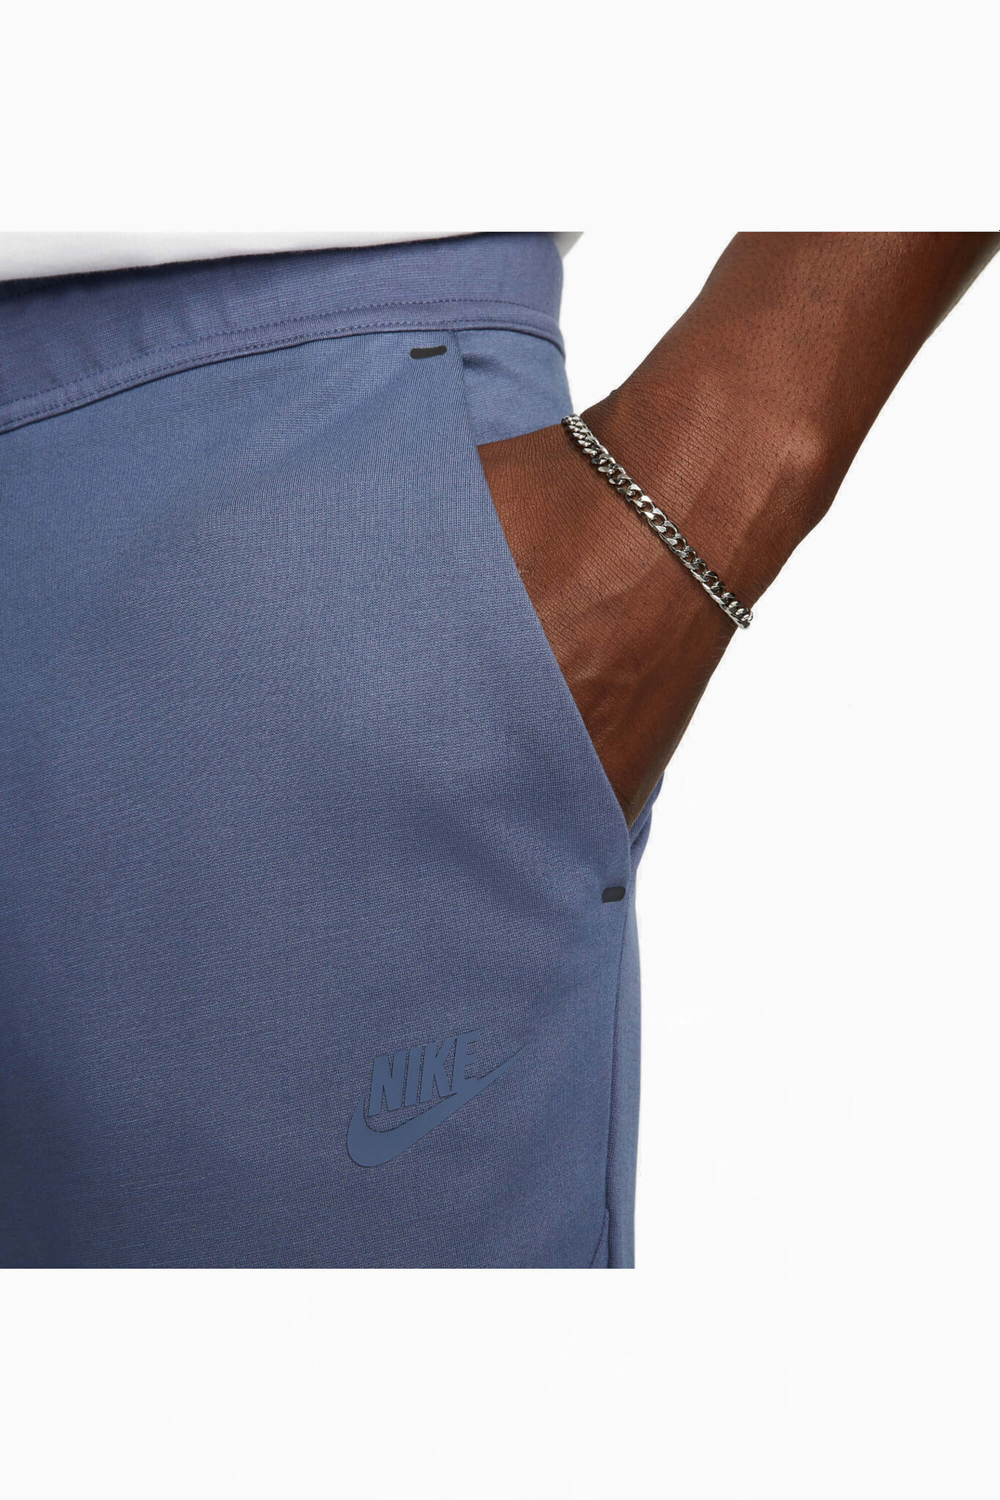 Штаны Nike Sportswear Tech Fleece Lightweight